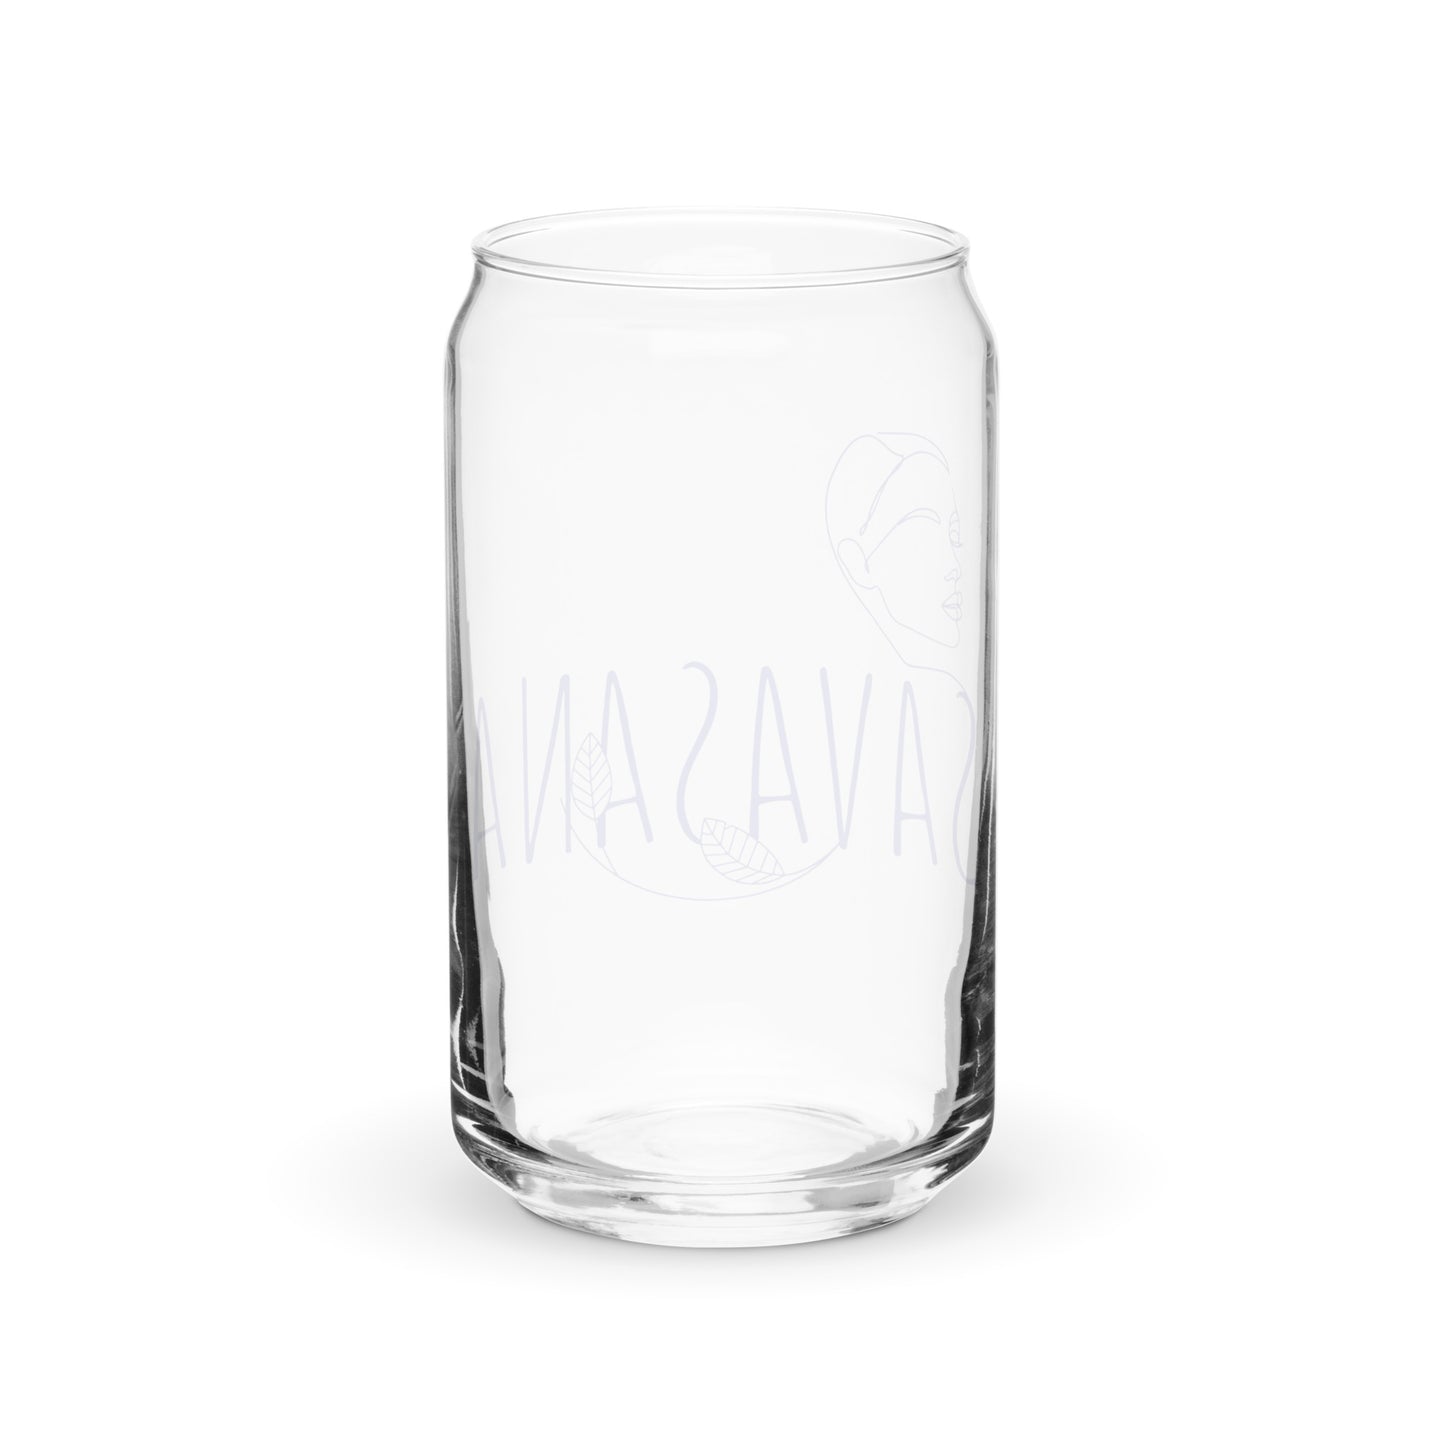 Savasana Can-shaped glass